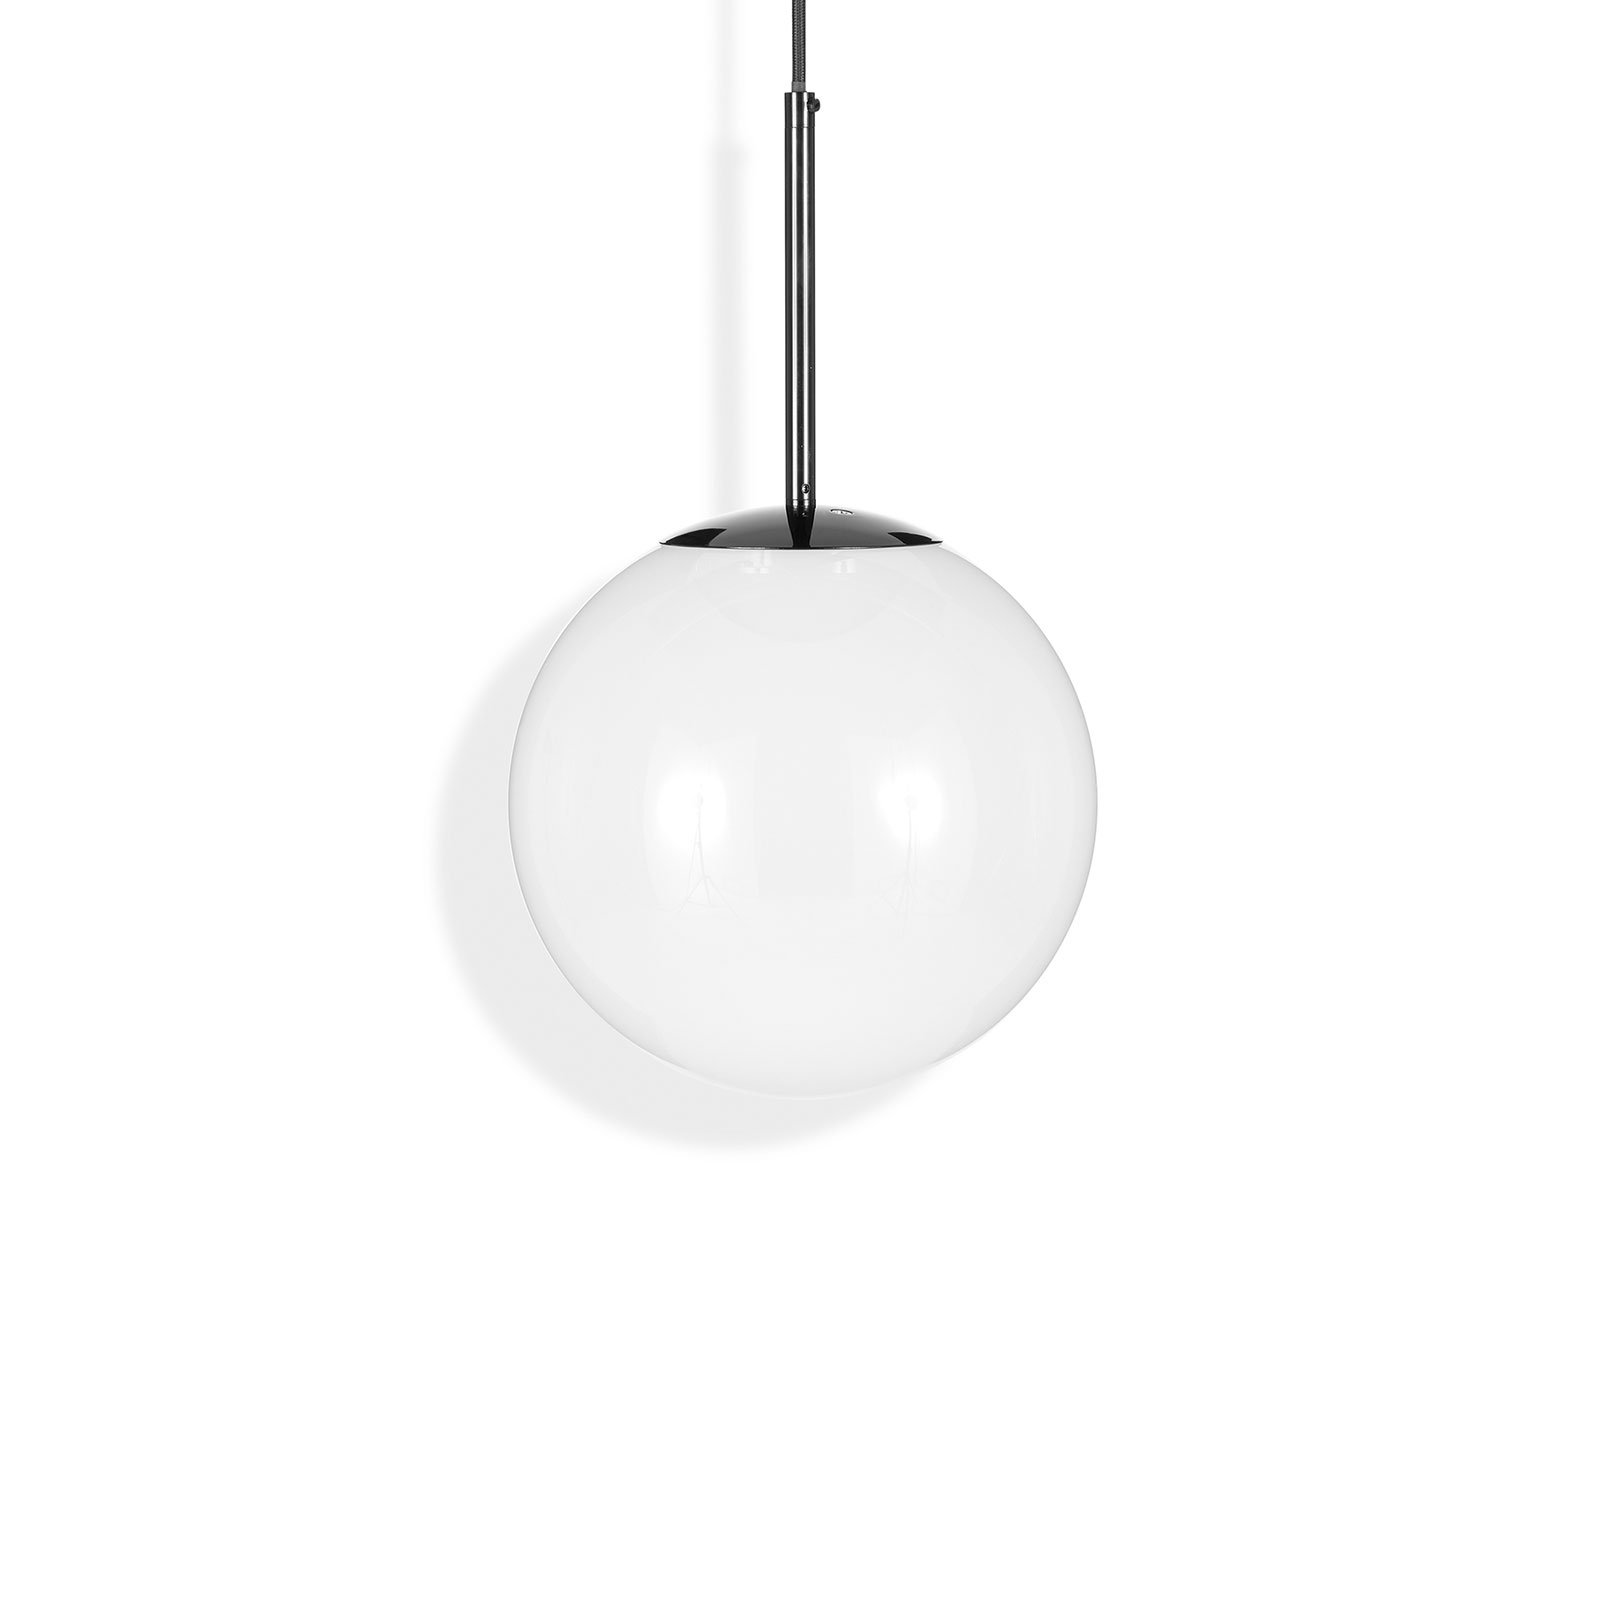 Tom Dixon Globe lampă suspendată LED, Ø 25 cm